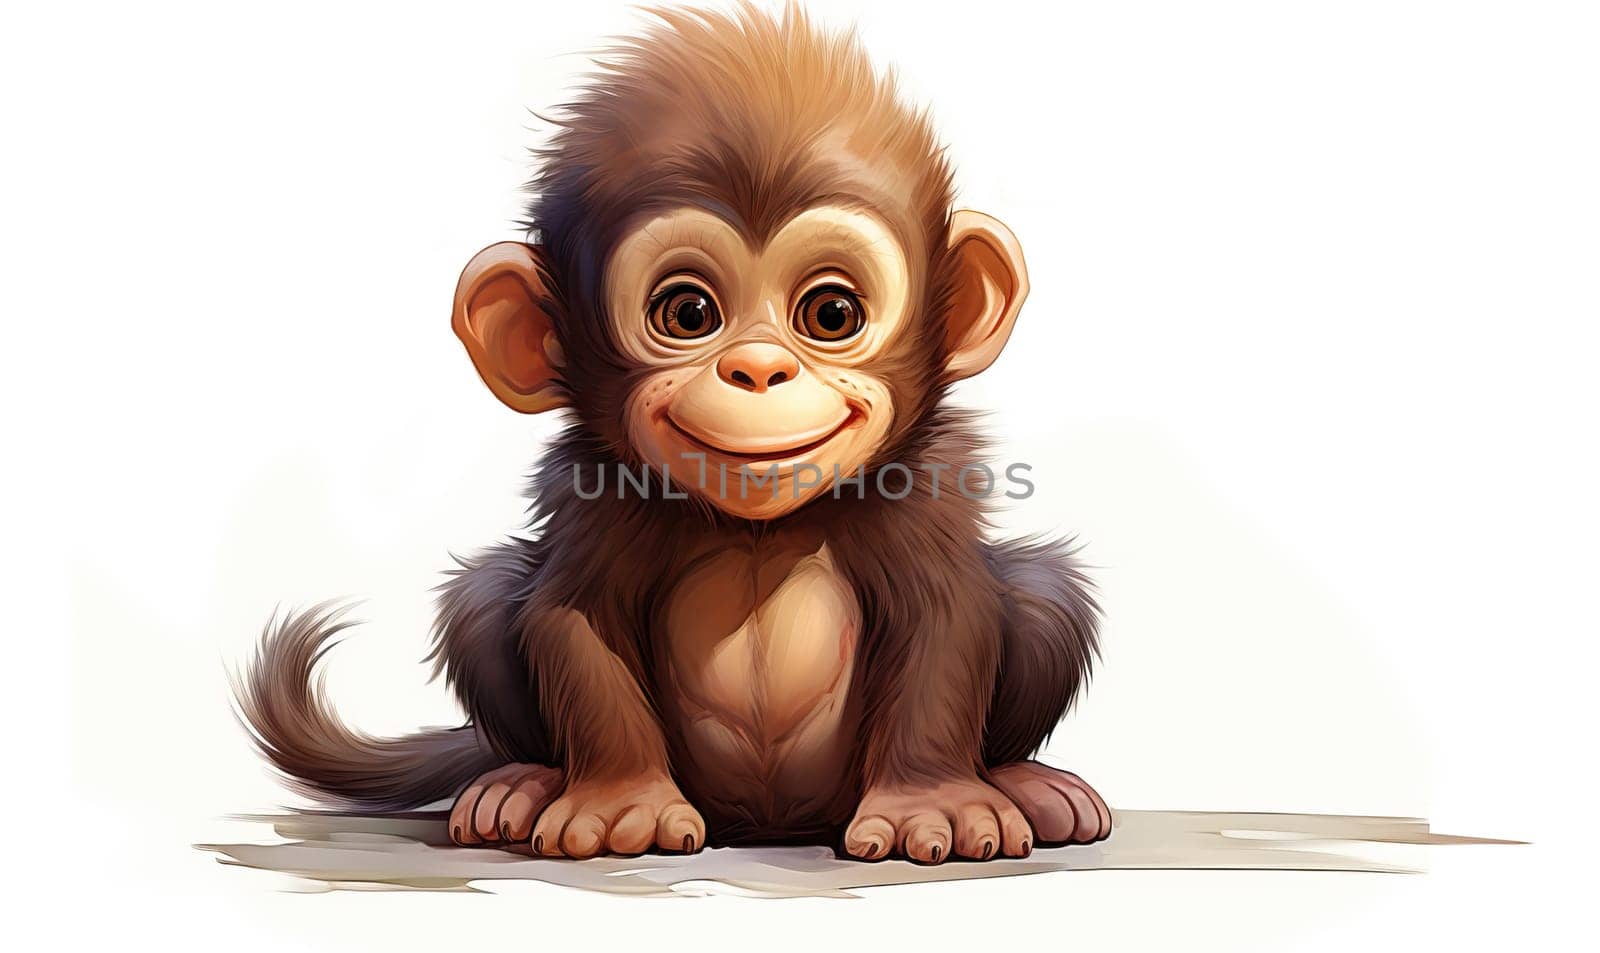 Cartoon animal monkey on a white background. by Fischeron